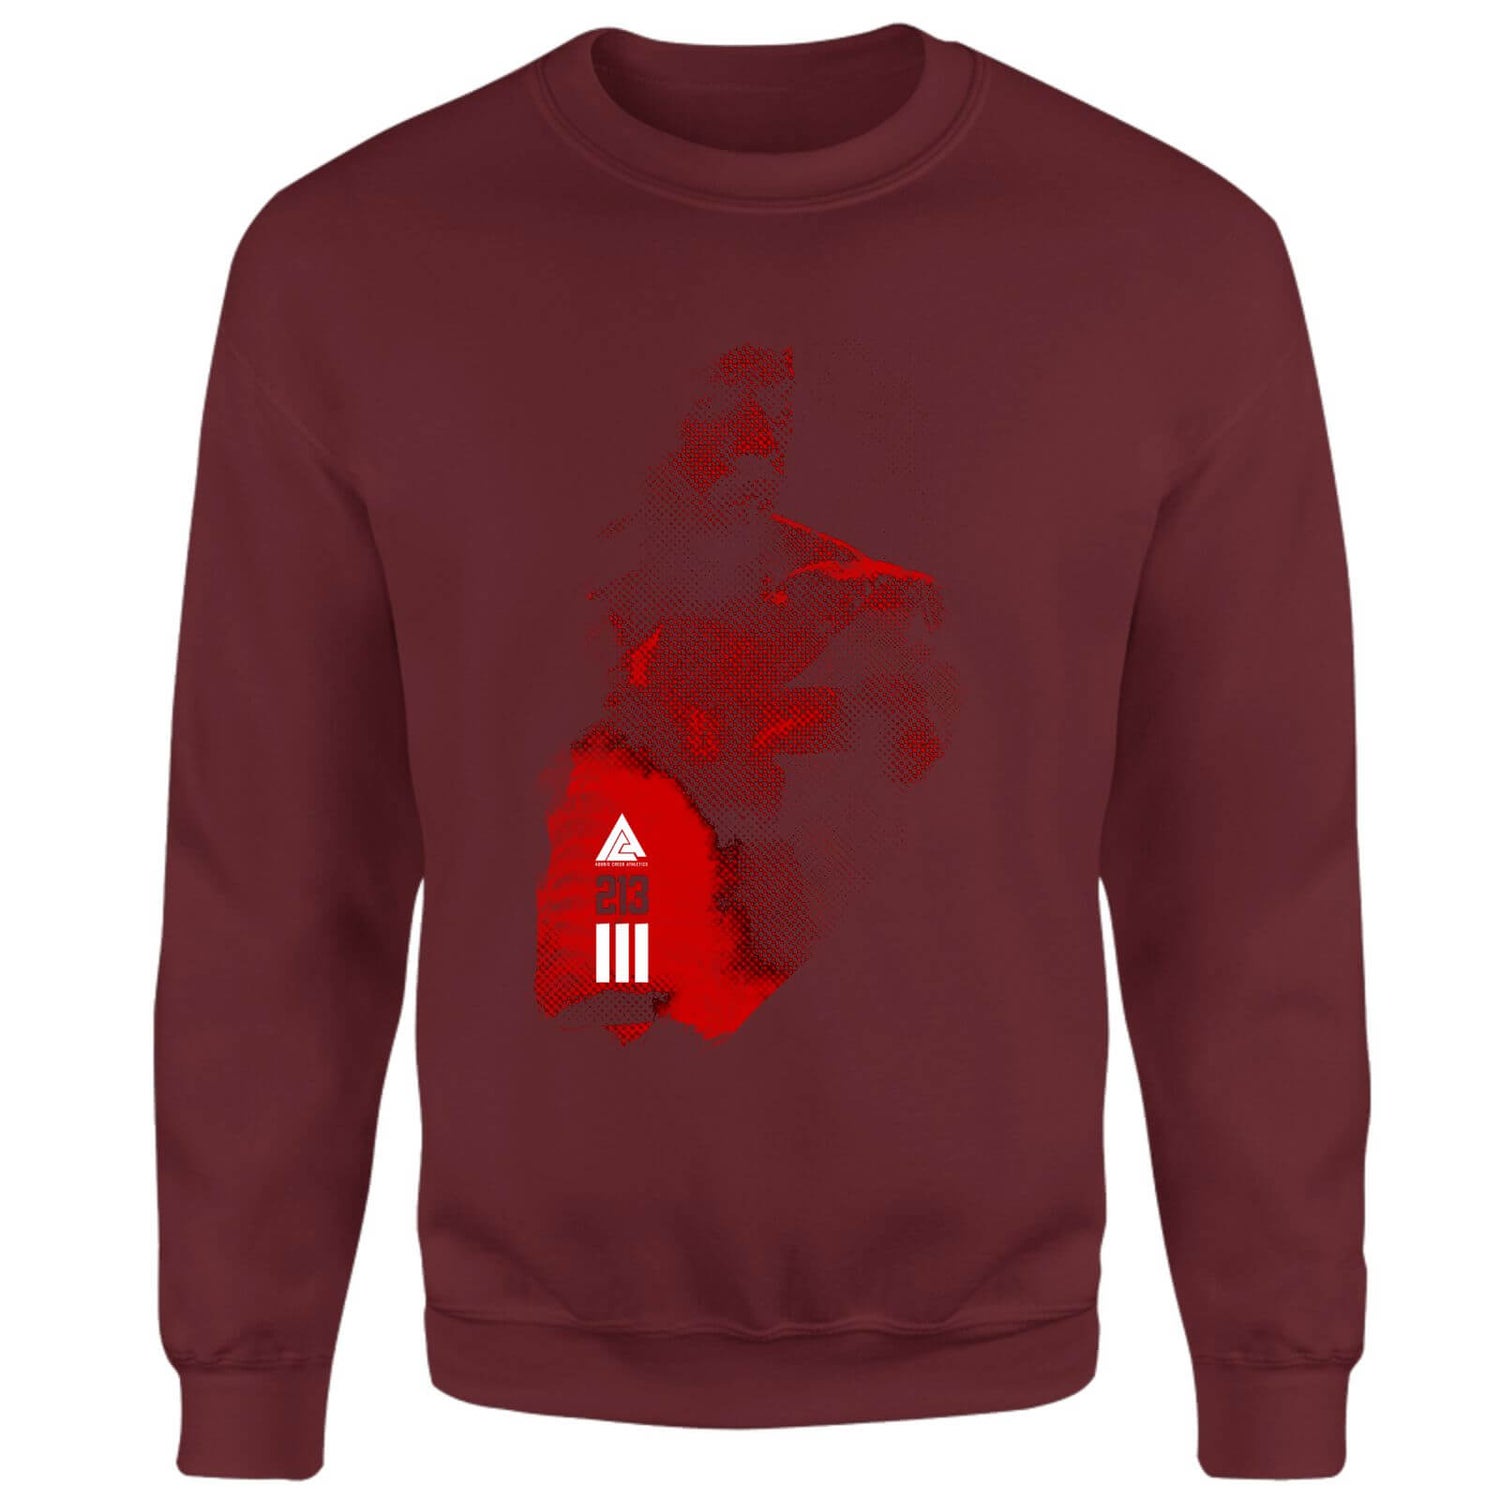 Creed 213 Sweatshirt - Burgundy